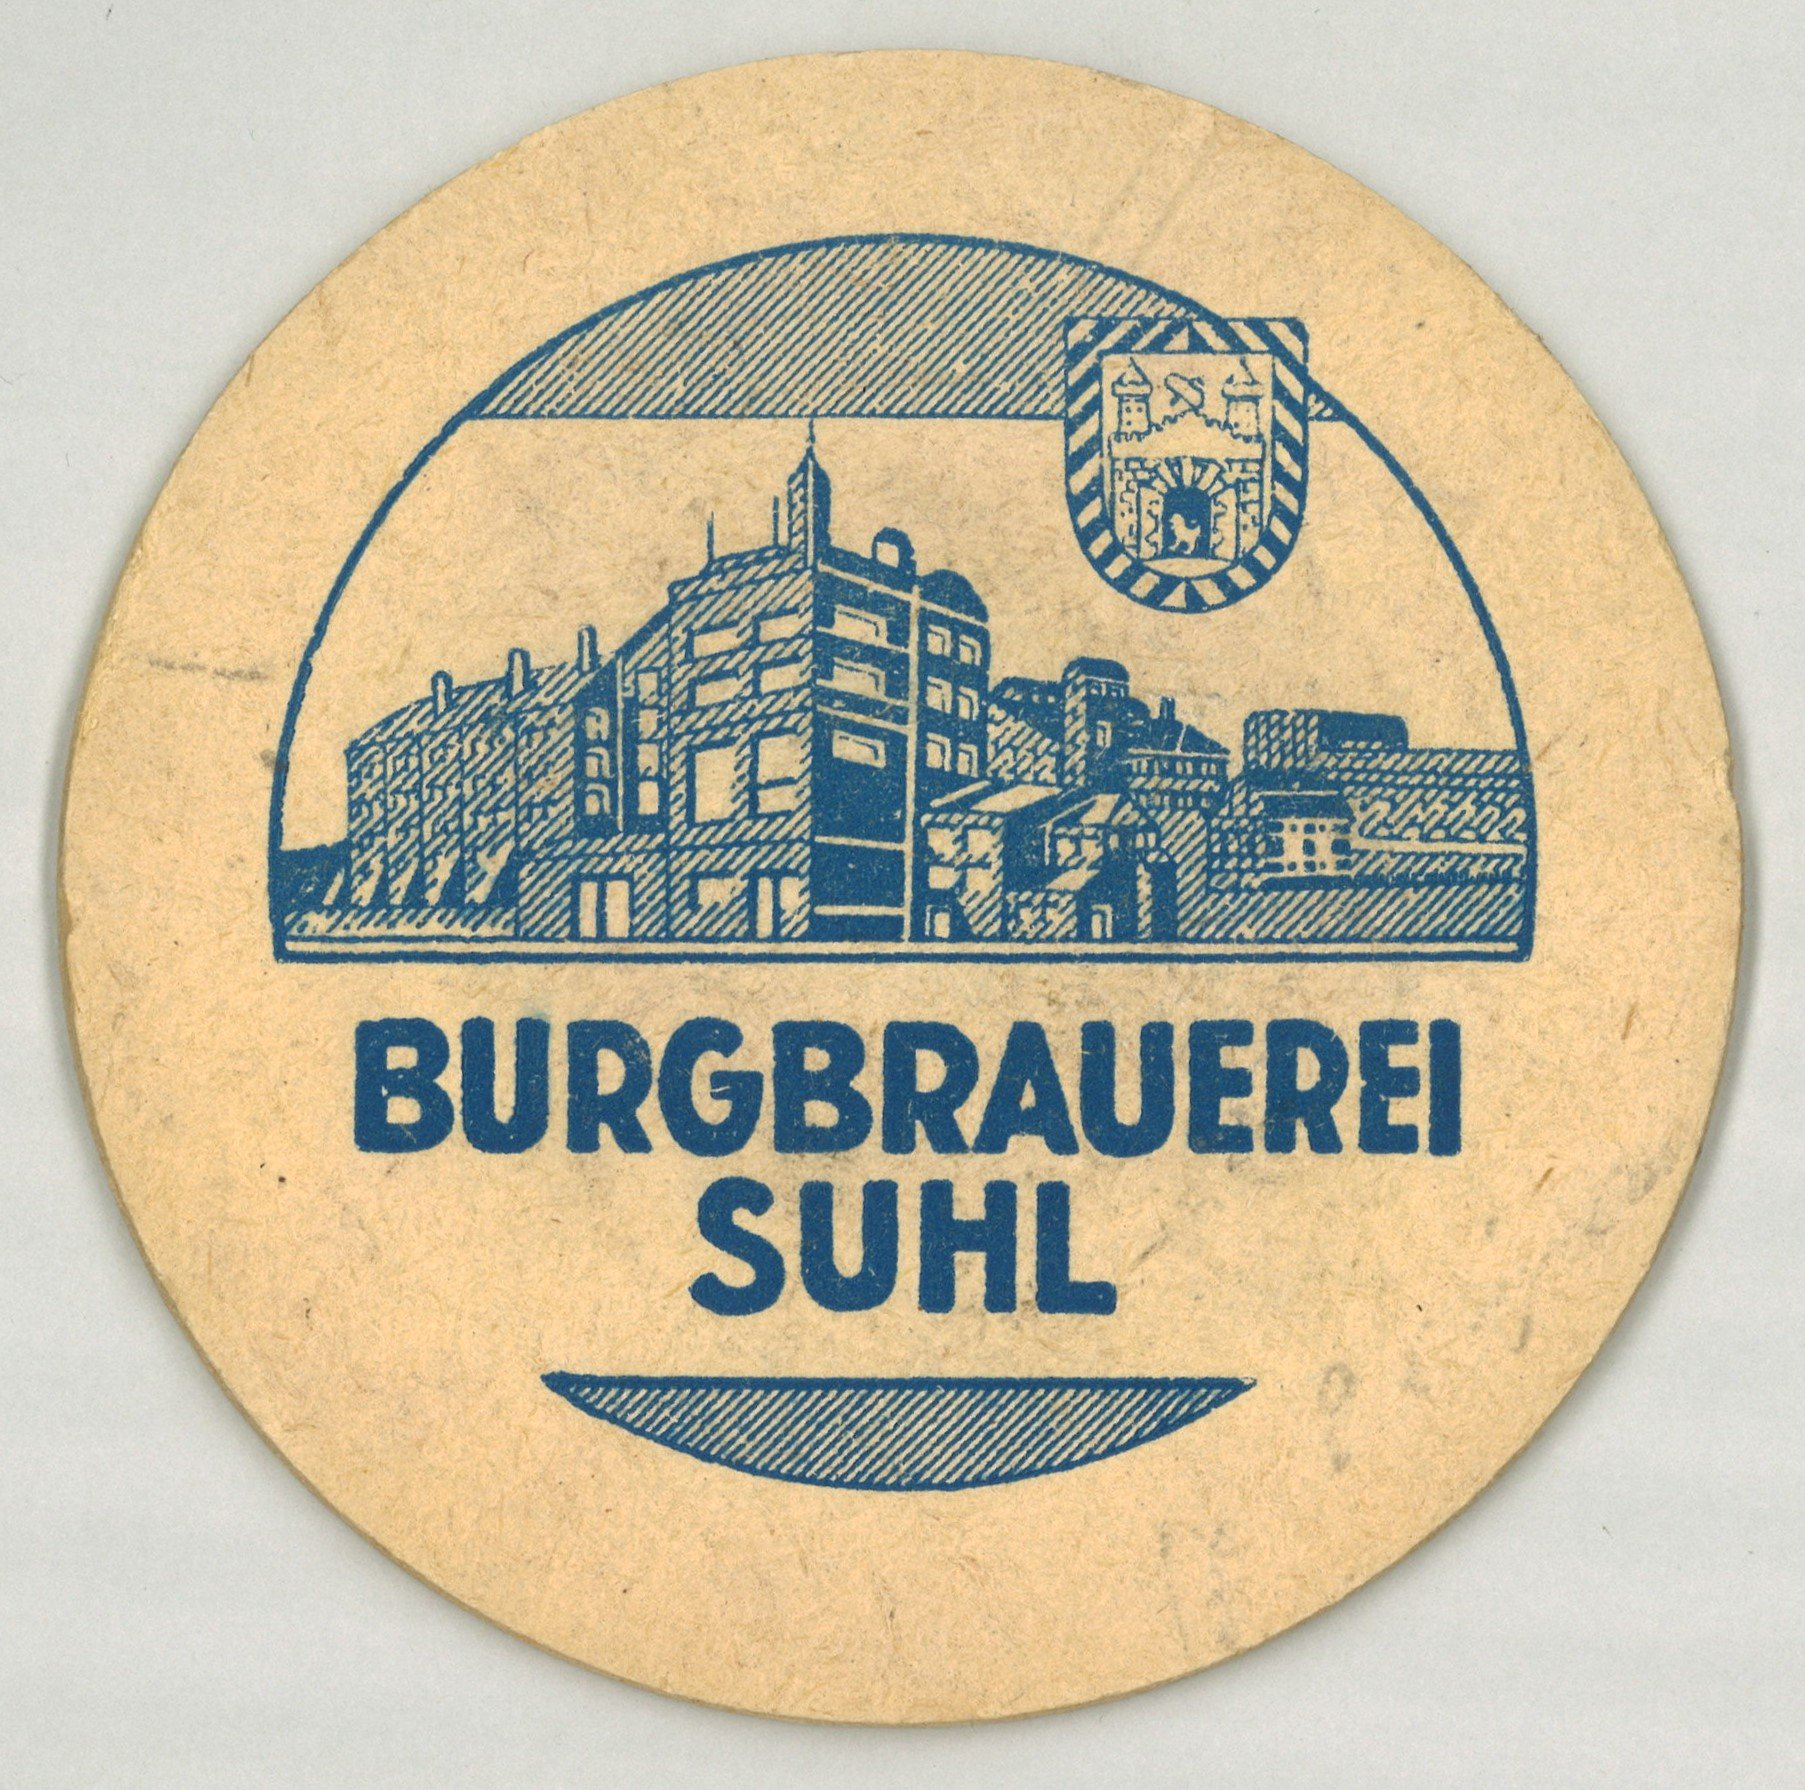 Suhl: Burgbrauerei Suhl (Landesgeschichtliche Vereinigung für die Mark Brandenburg e.V., Archiv CC BY)